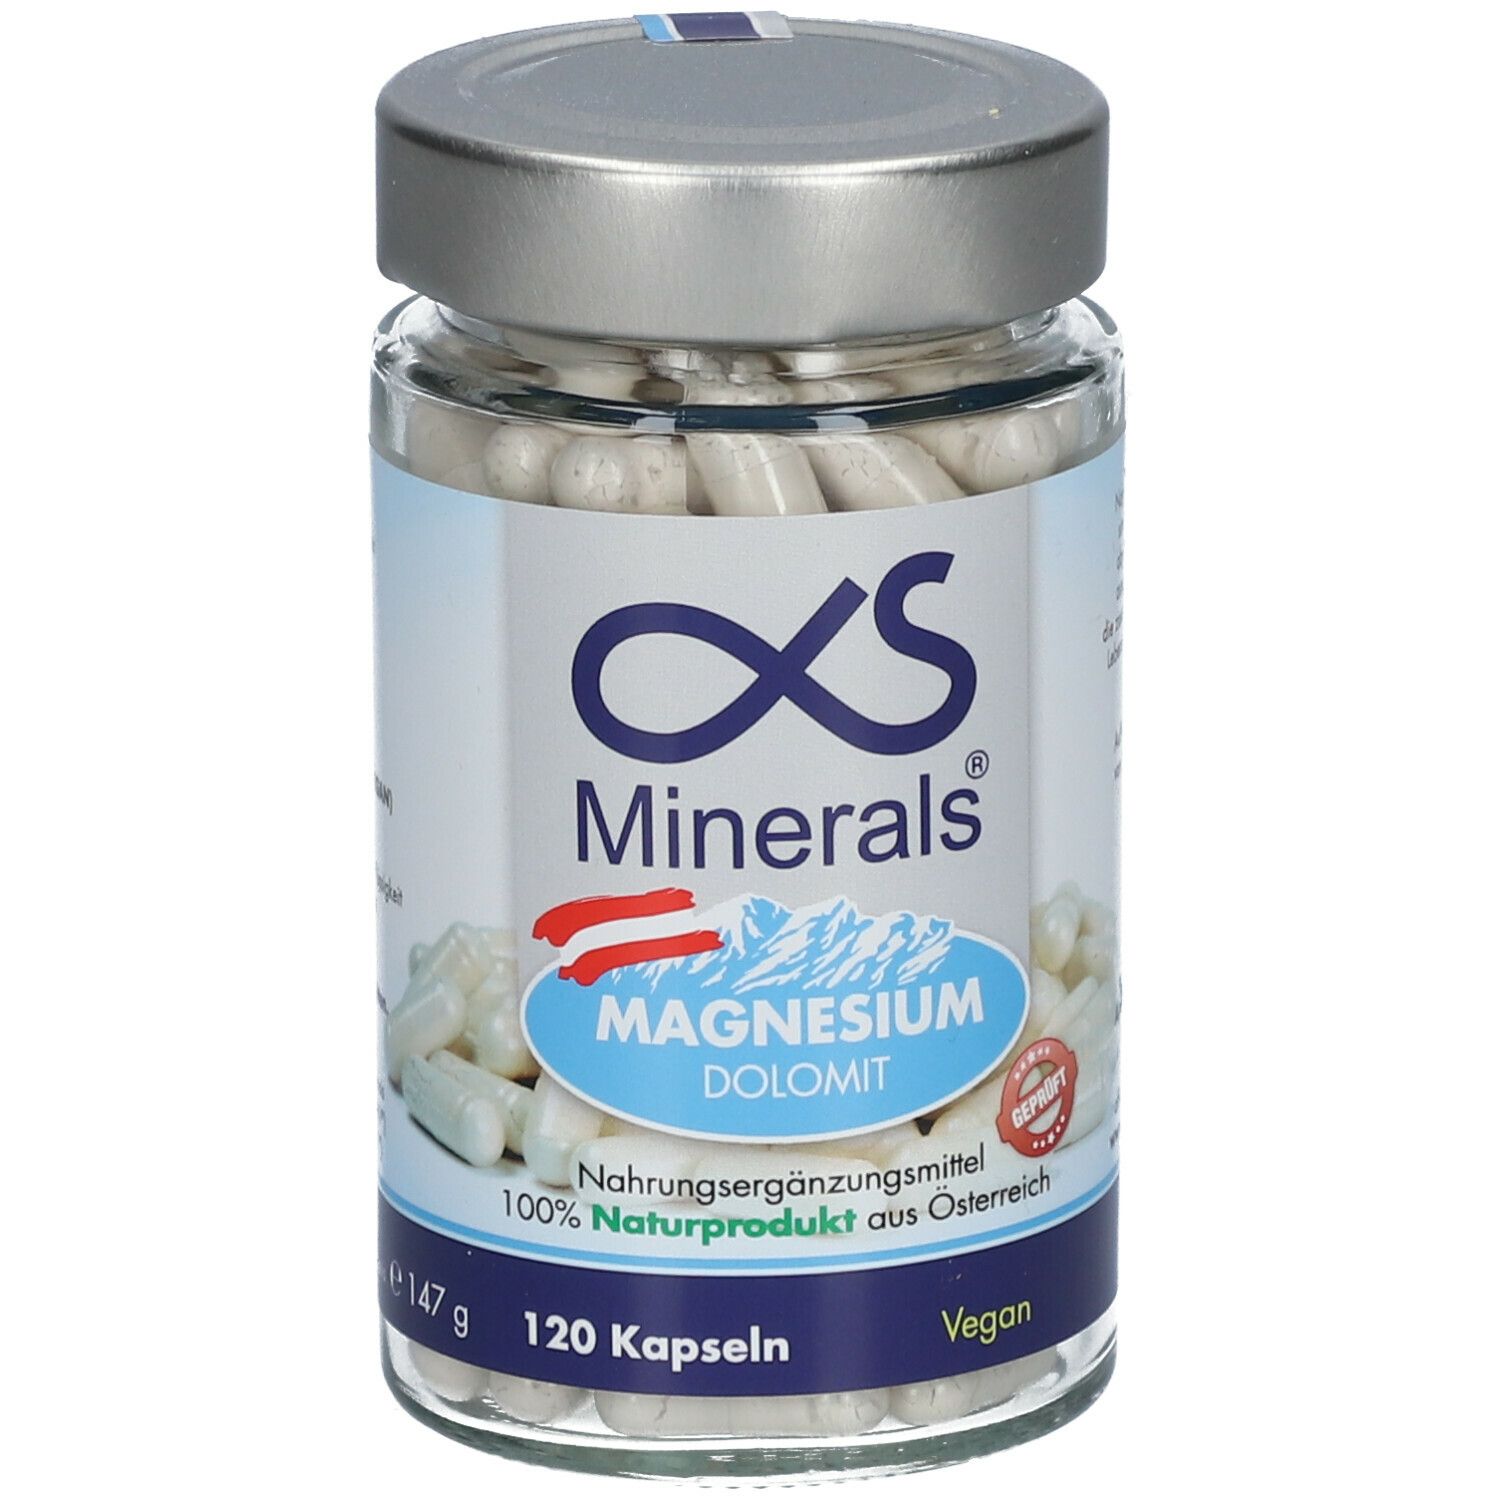 AlphaS Minerals® Magnesium Austria